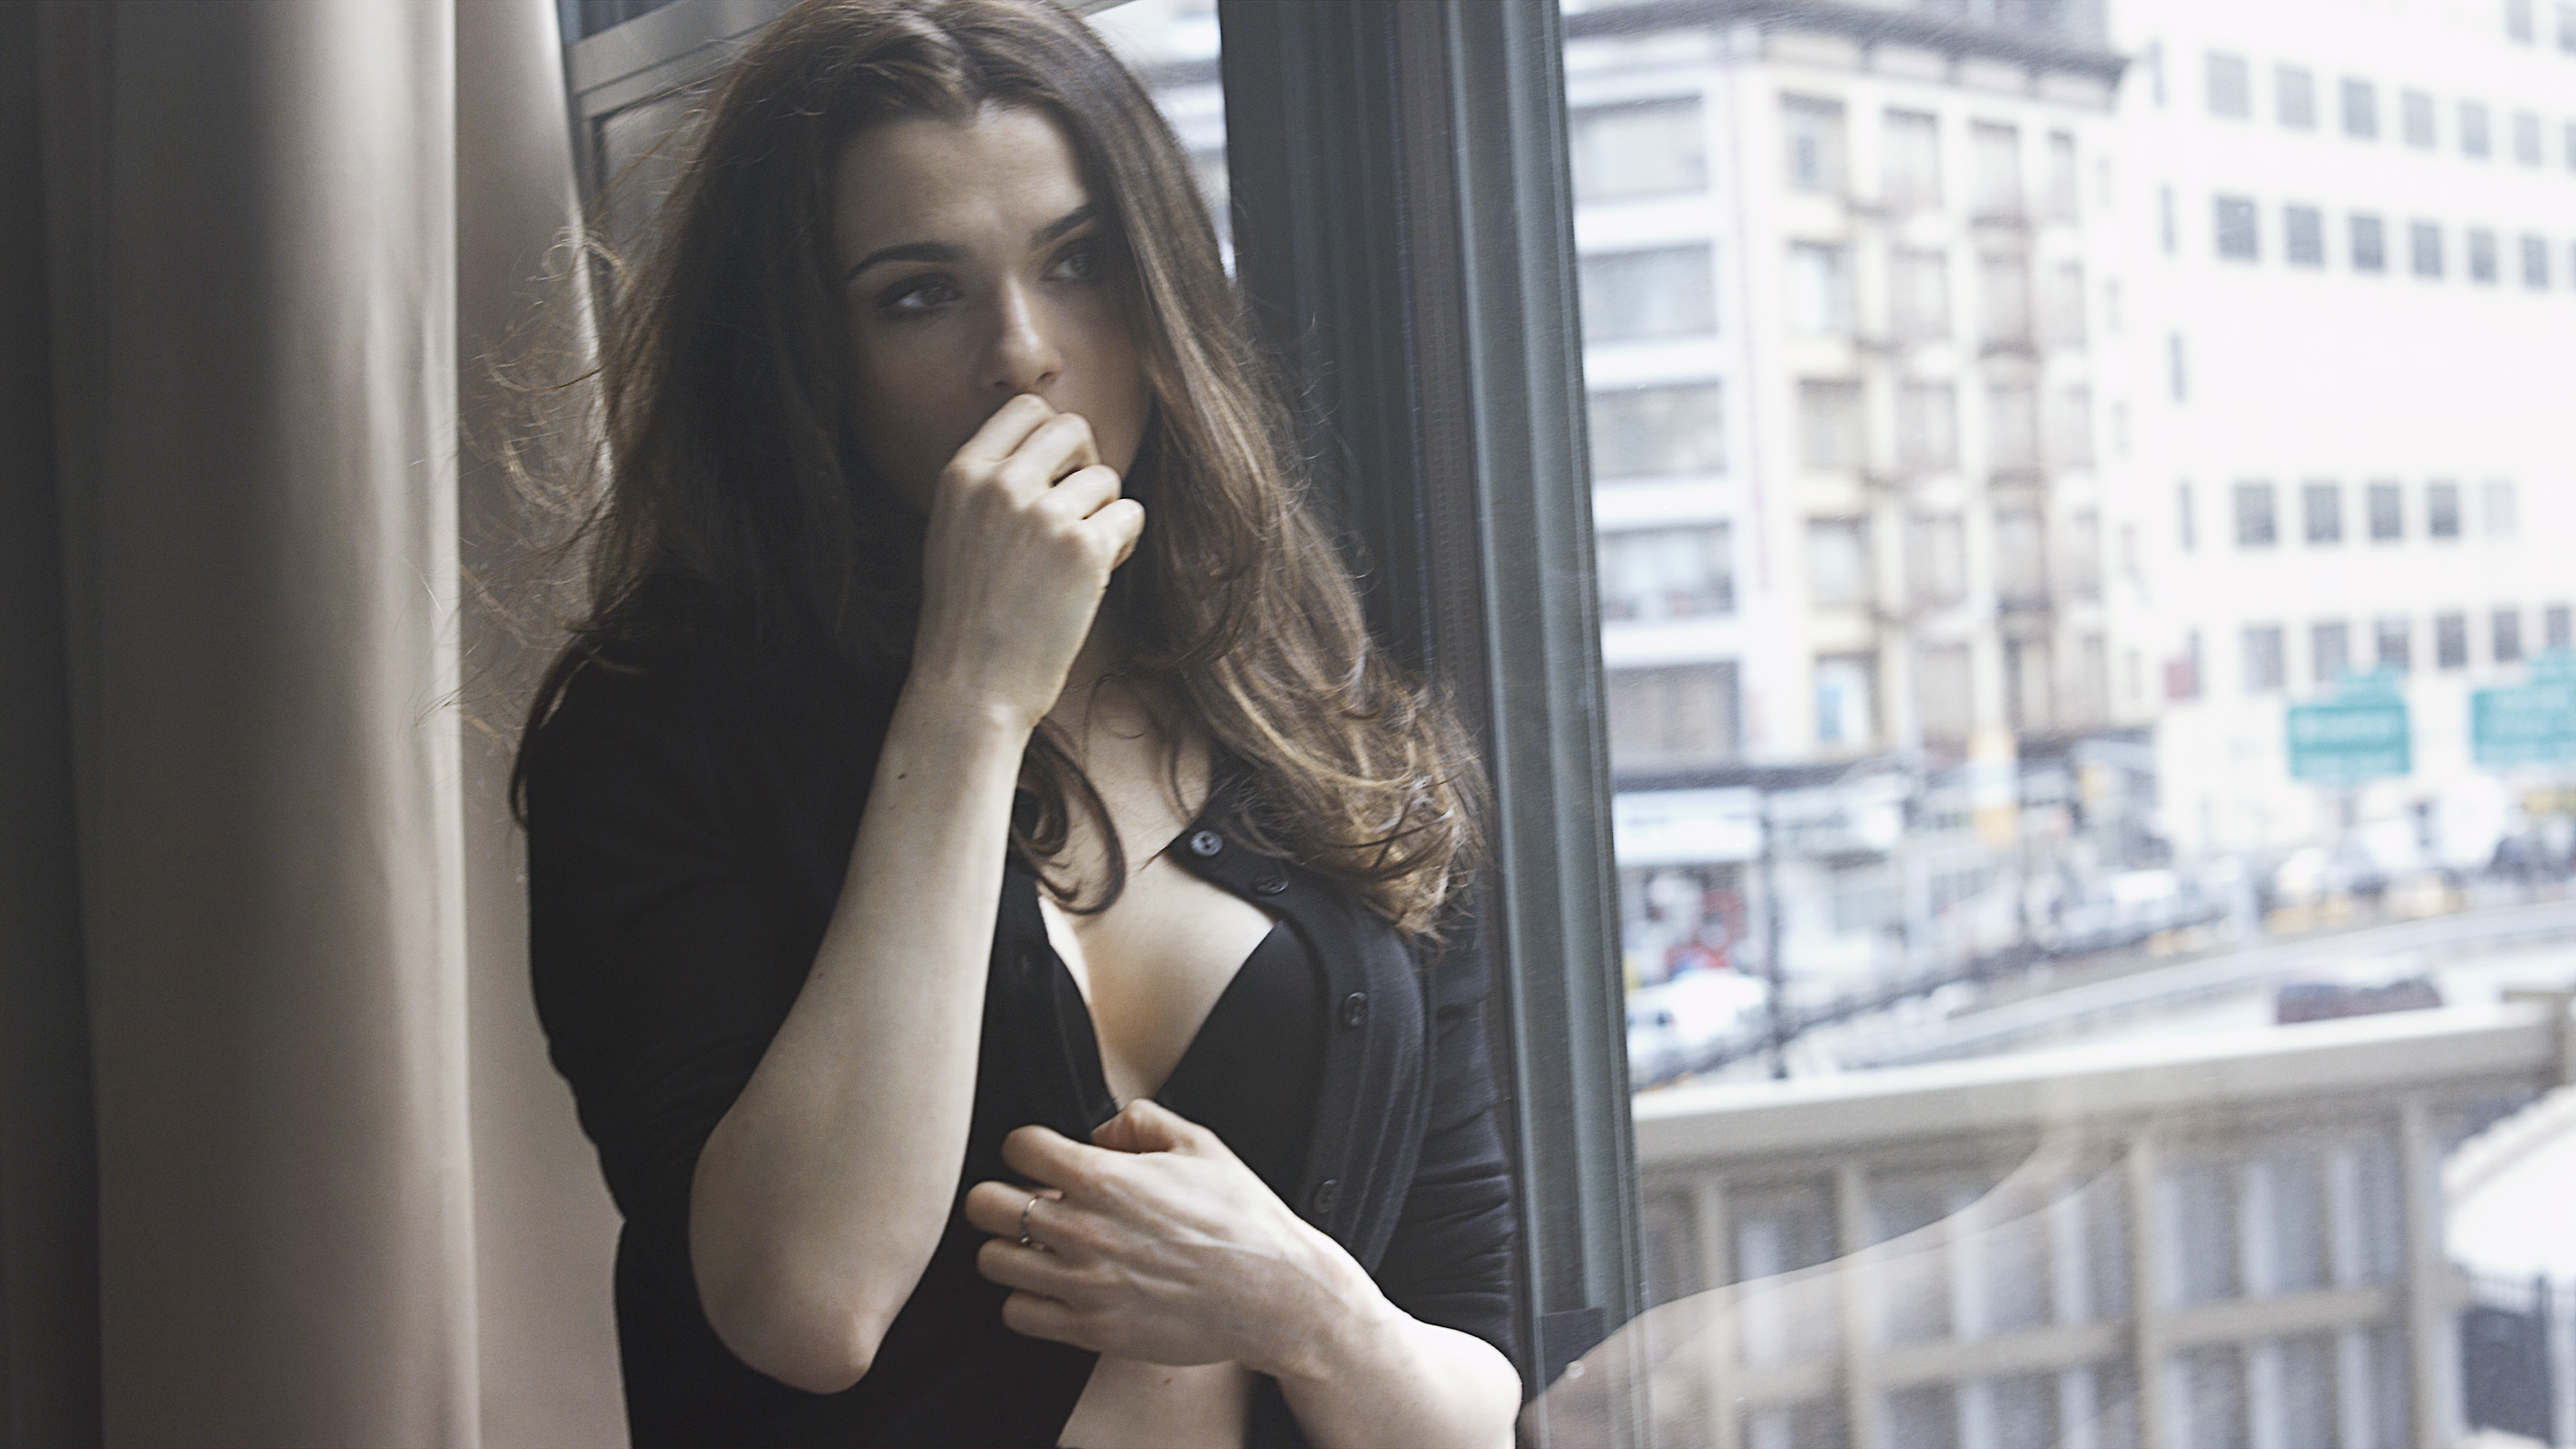 Rachel Weisz Hot in Black Bra Near the Window